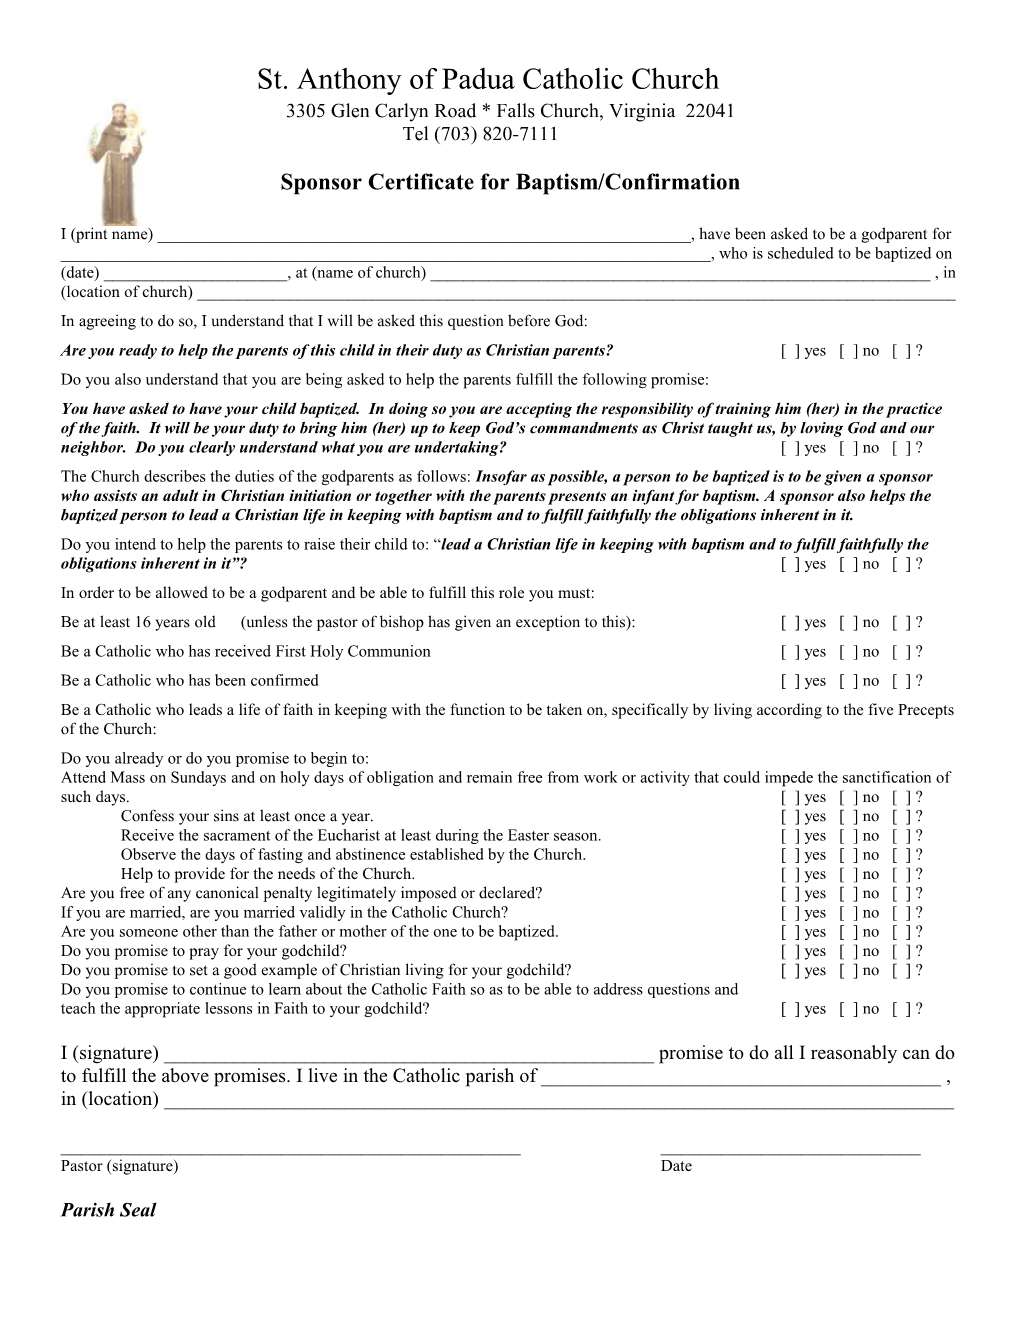 Sponsor Certificate for Baptism/Confirmation